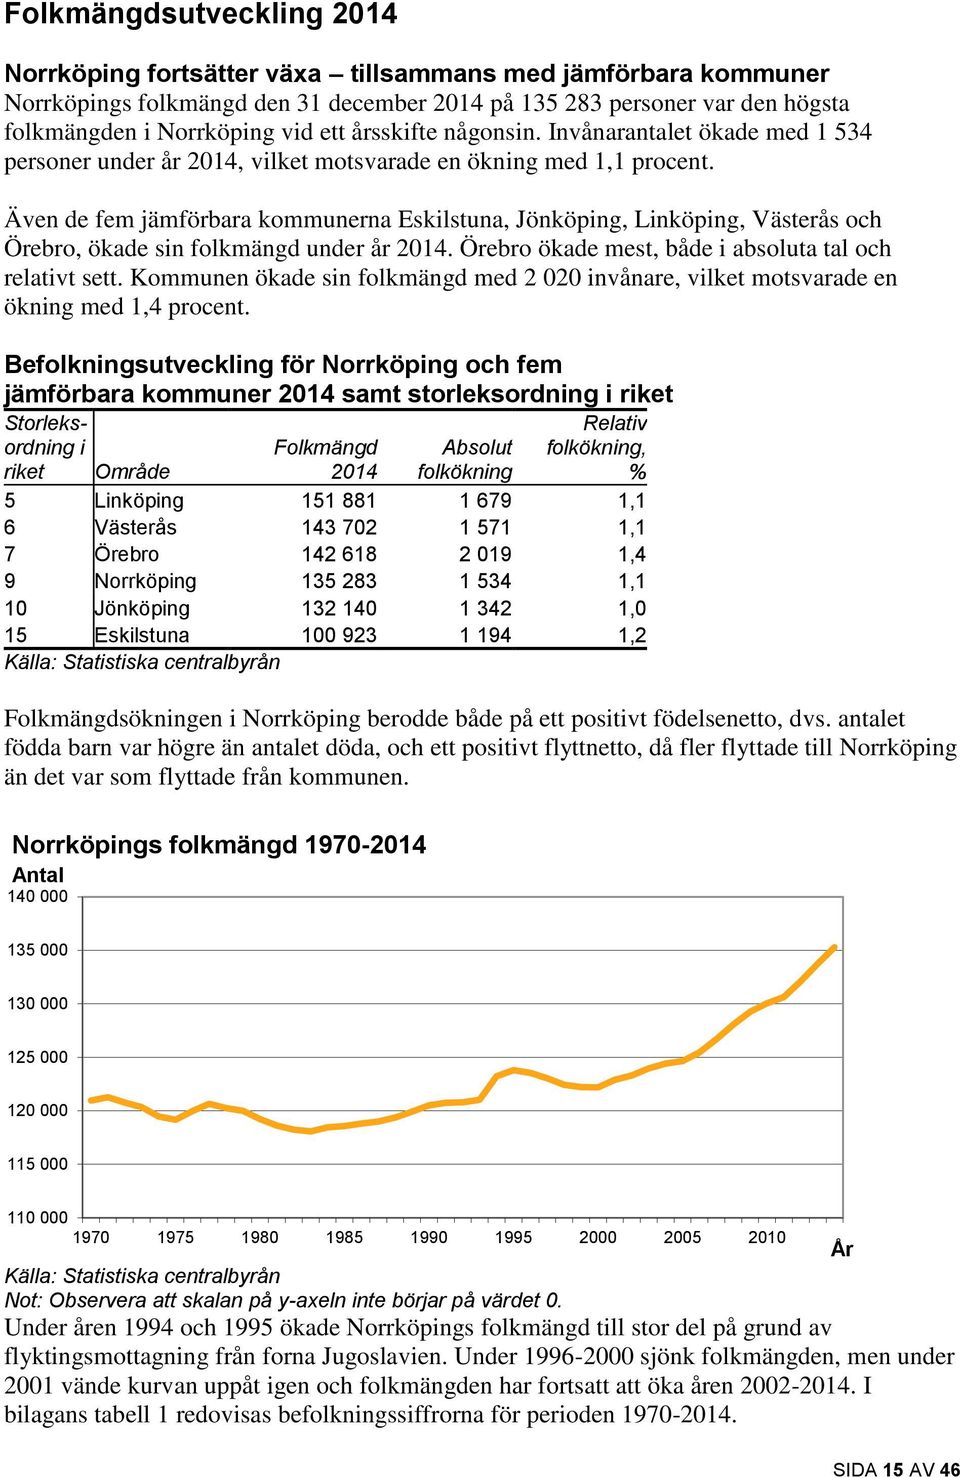 Även de fem jämförbara kommunerna Eskilstuna, Jönköping, Linköping, Västerås och Örebro, ökade sin folkmängd under år 2014. Örebro ökade mest, både i absoluta tal och relativt sett.